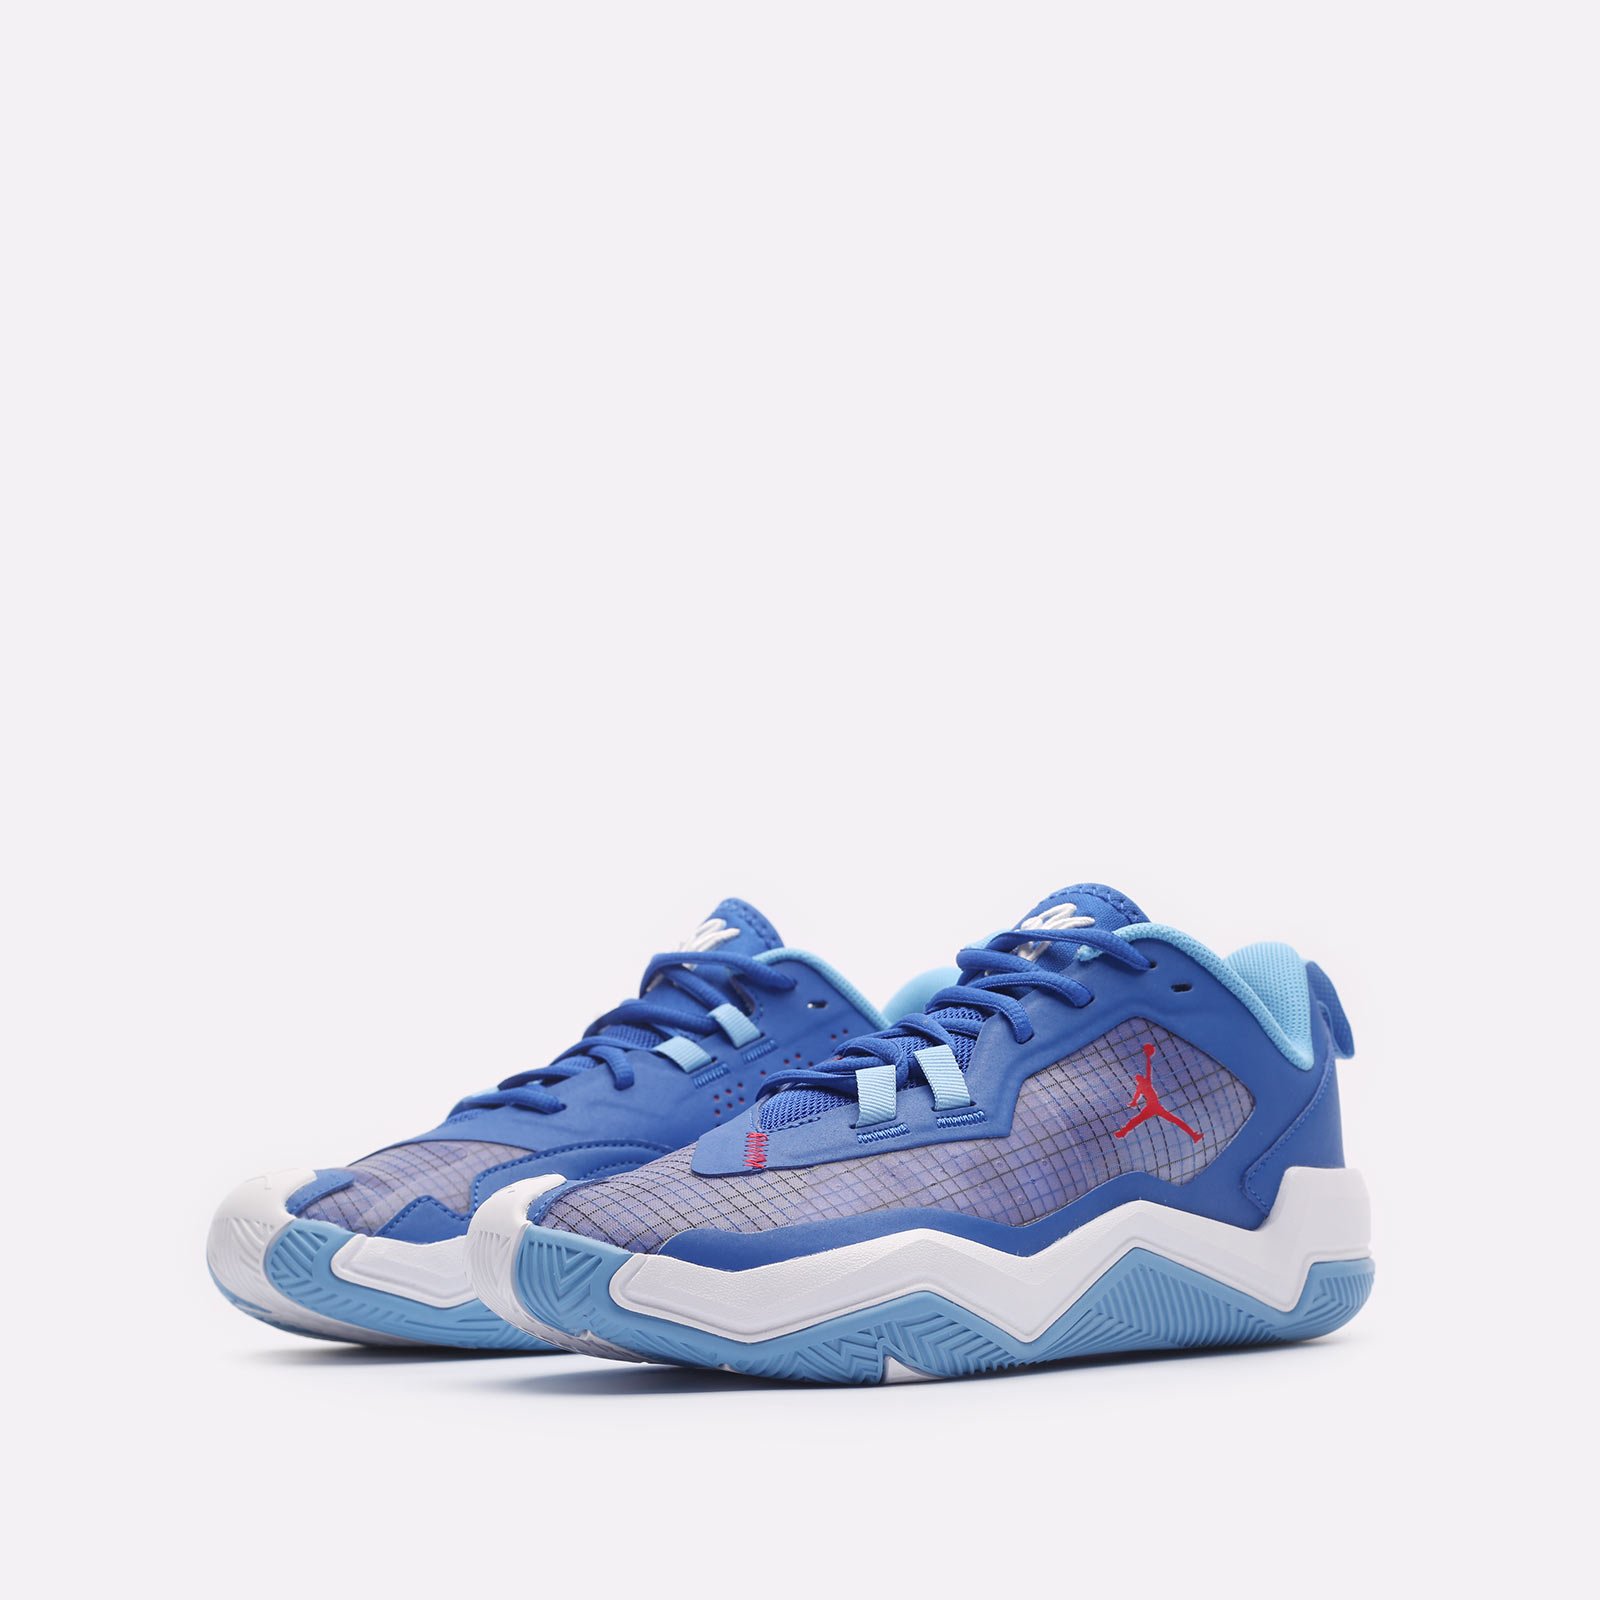 мужские синие баскетбольные кроссовки Jordan One Take 4 DO7193-400 - цена, описание, фото 4